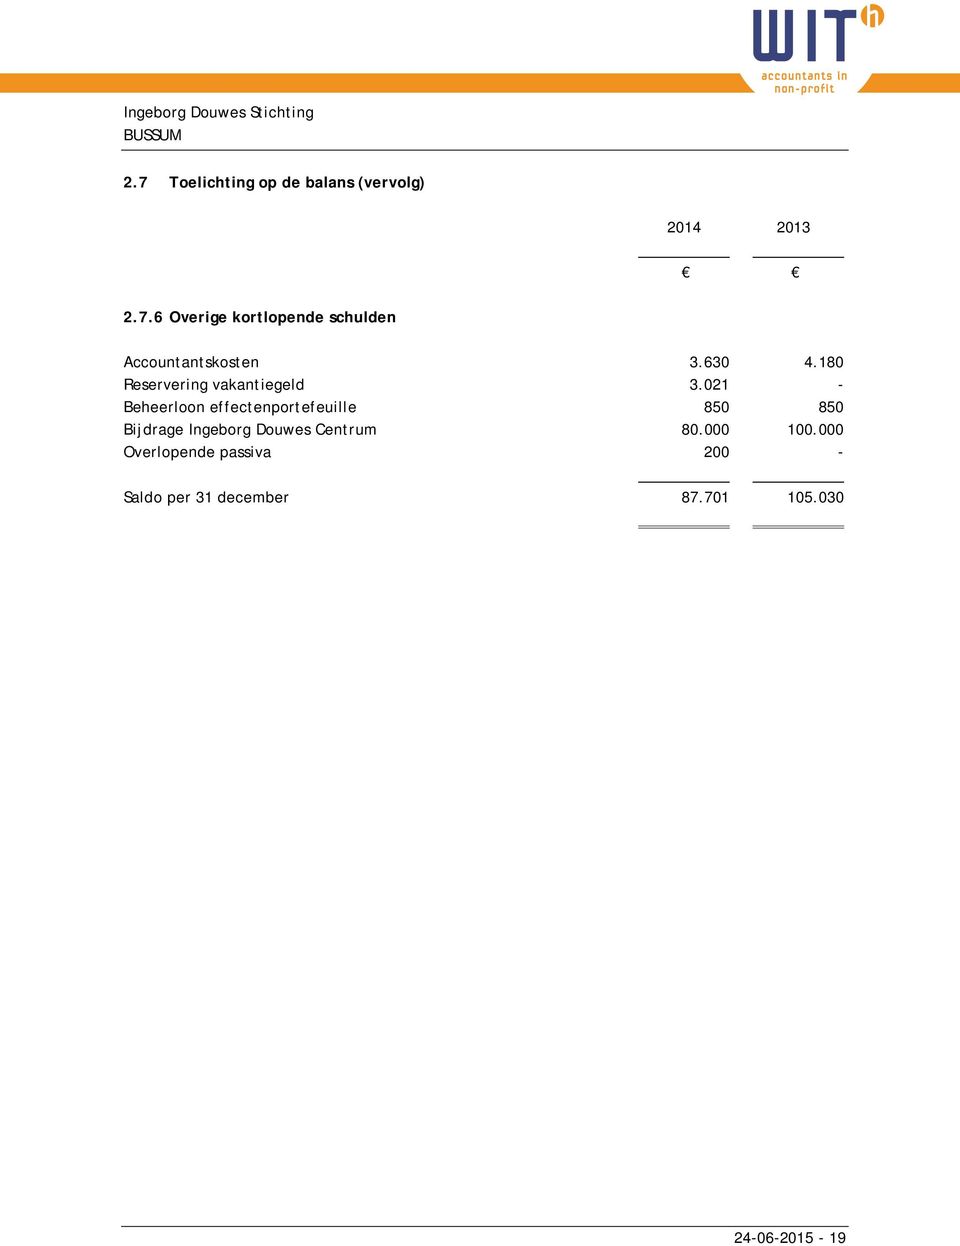 021 - Beheerloon effectenportefeuille 850 850 Bijdrage Ingeborg Douwes